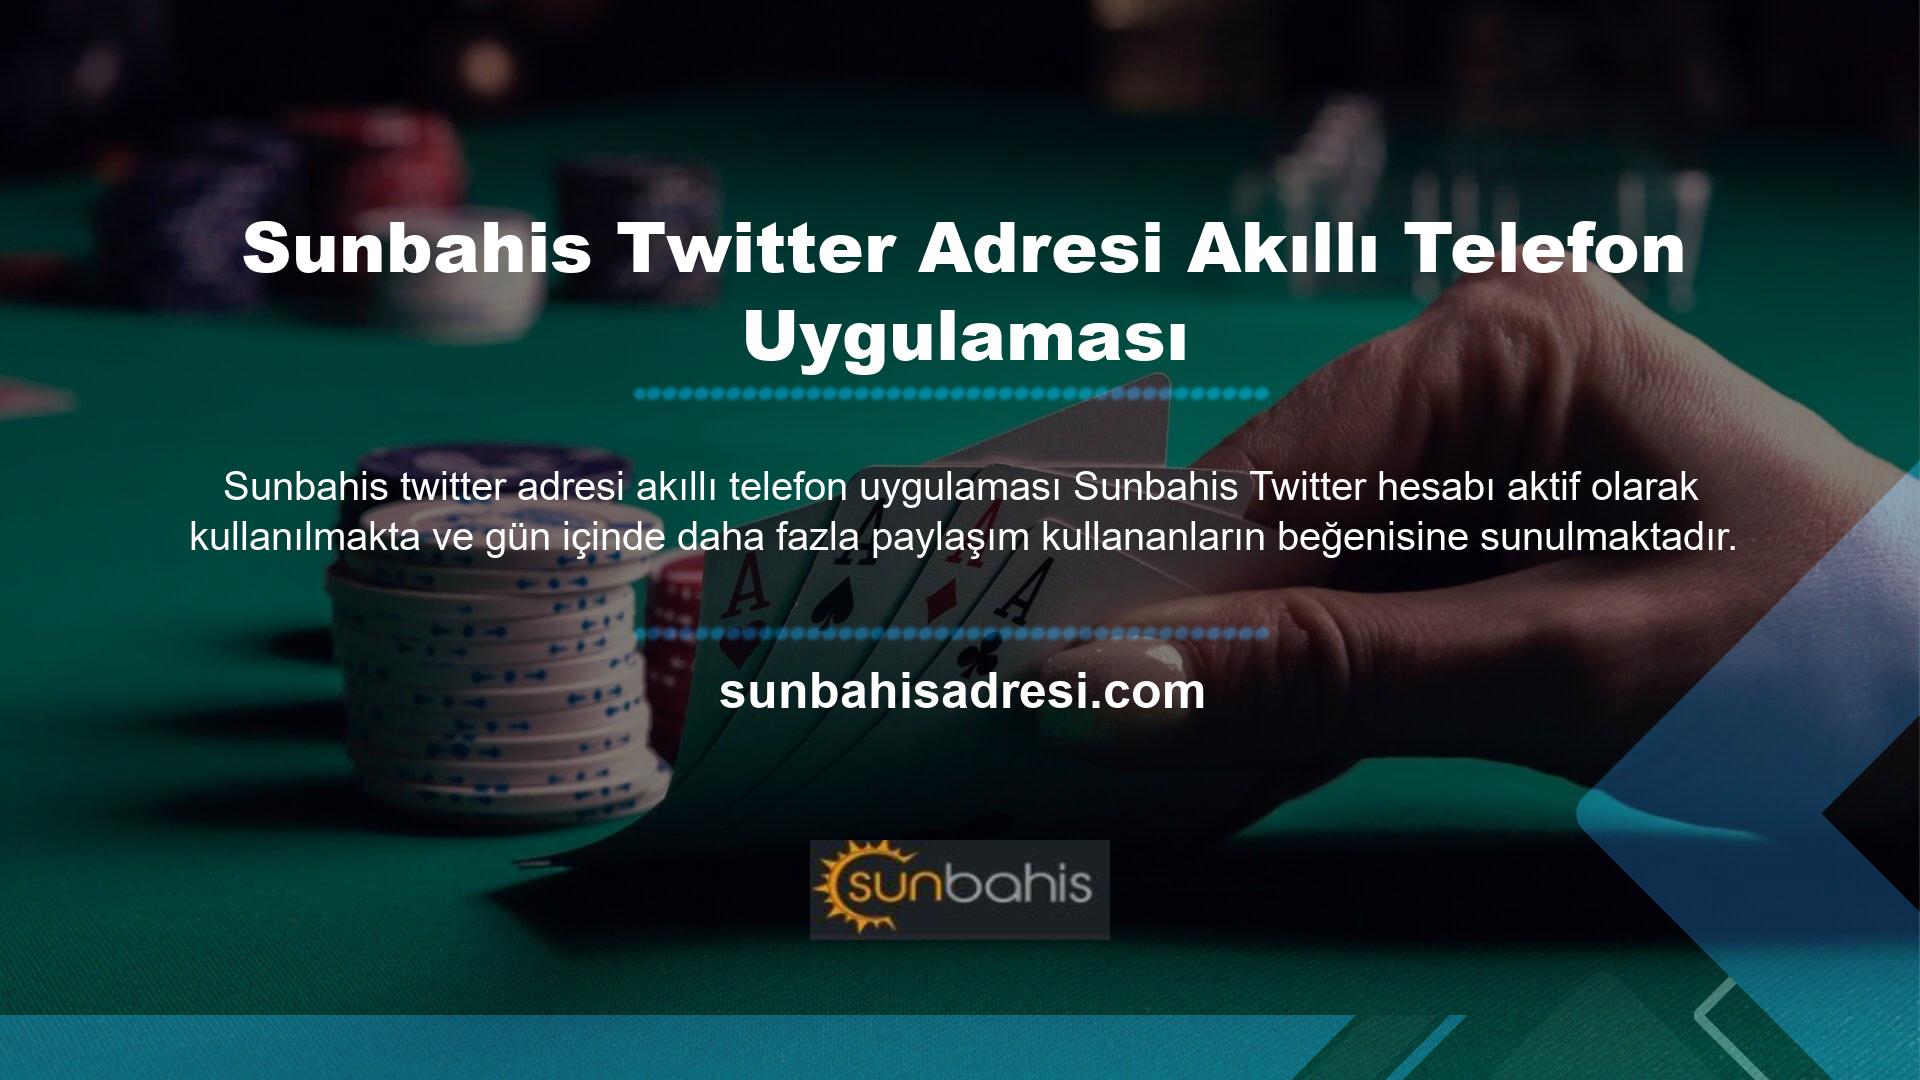 Bu sitenin Twitter kullanıcı adı @Sunbahis Türk’tür ve Twitter'ın arama bölümünde kullanıcı adını aratarak durumunu kontrol edebilirsiniz